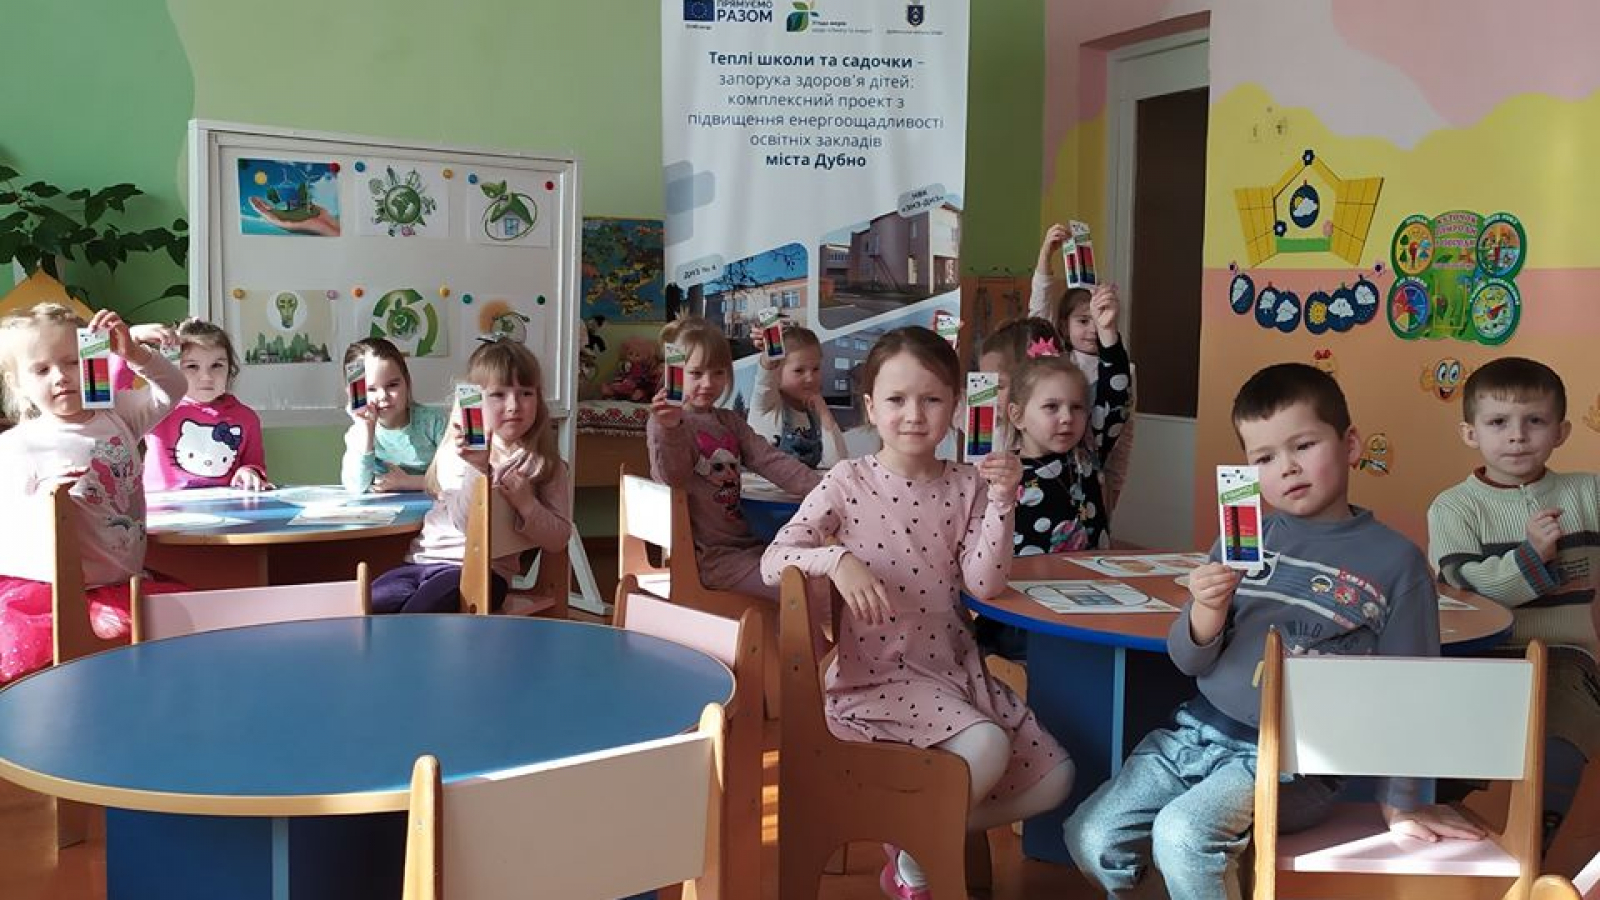 Ukraine: Preschool children in Dubno learn about energy efficiency